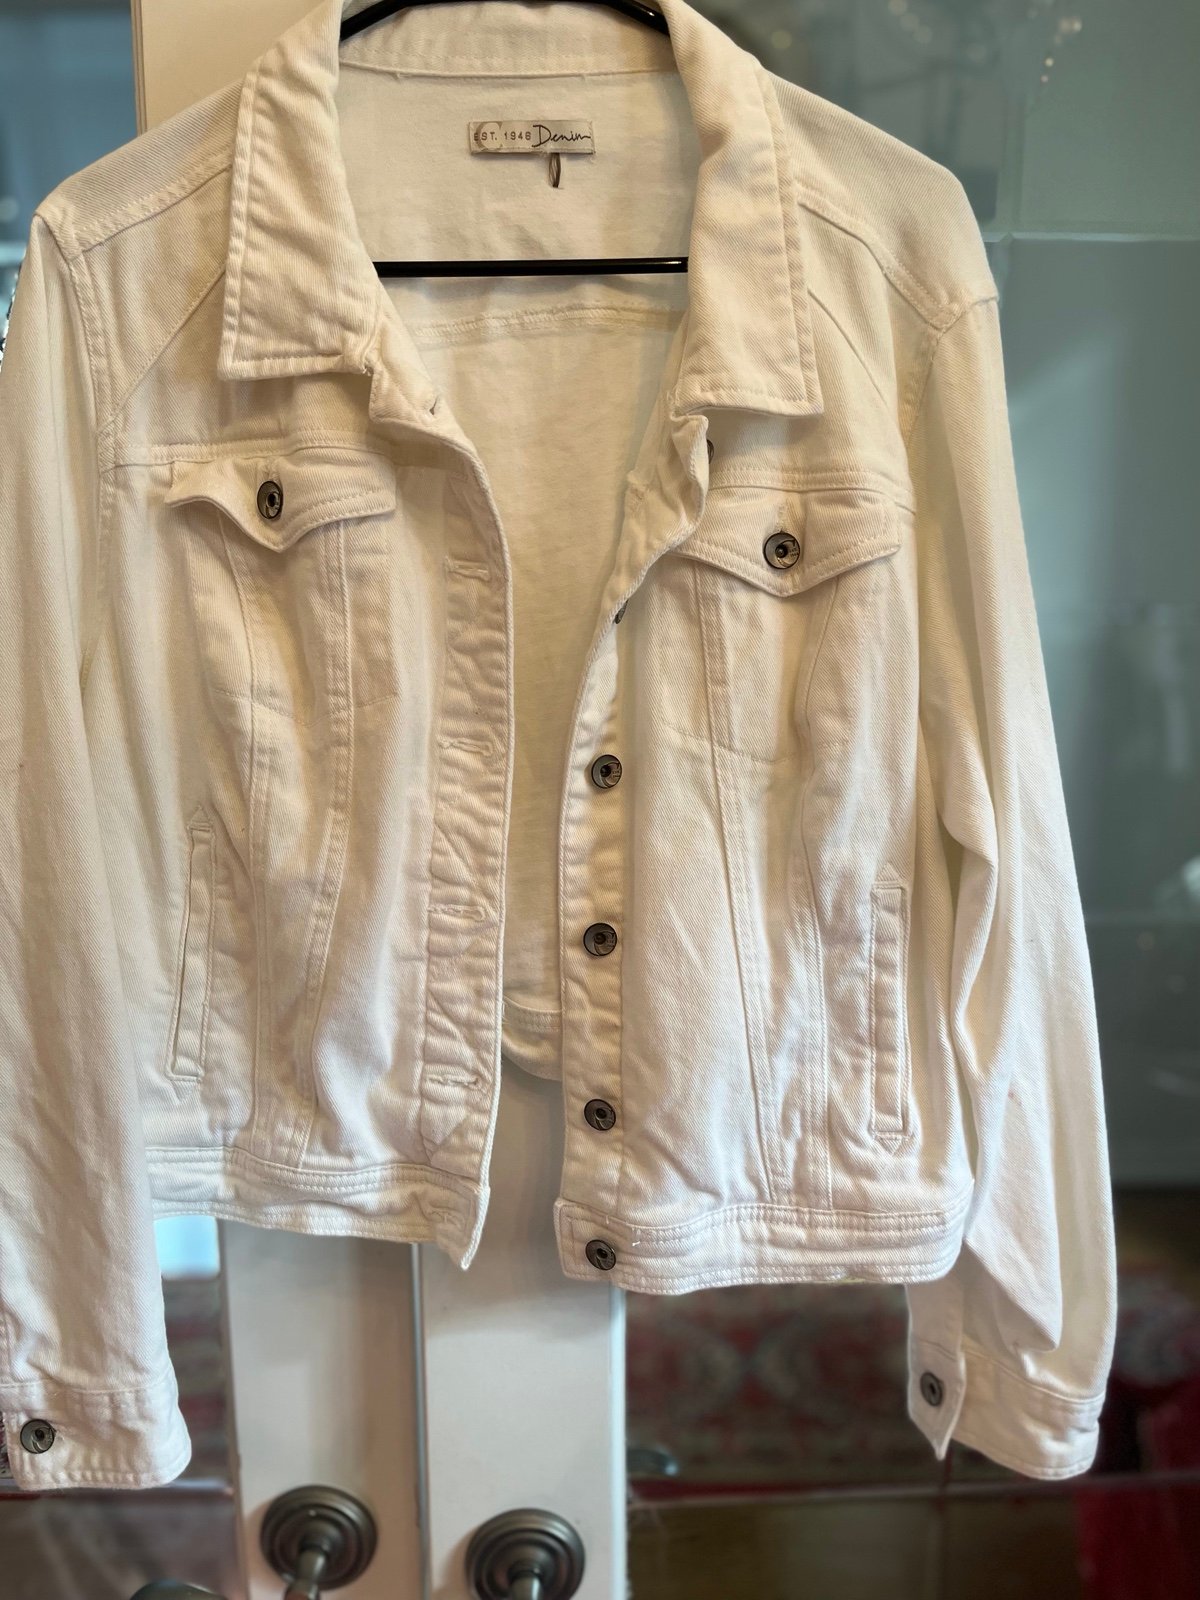 Stylish White Jean Jacket size Small H1wU7FdeF Cool